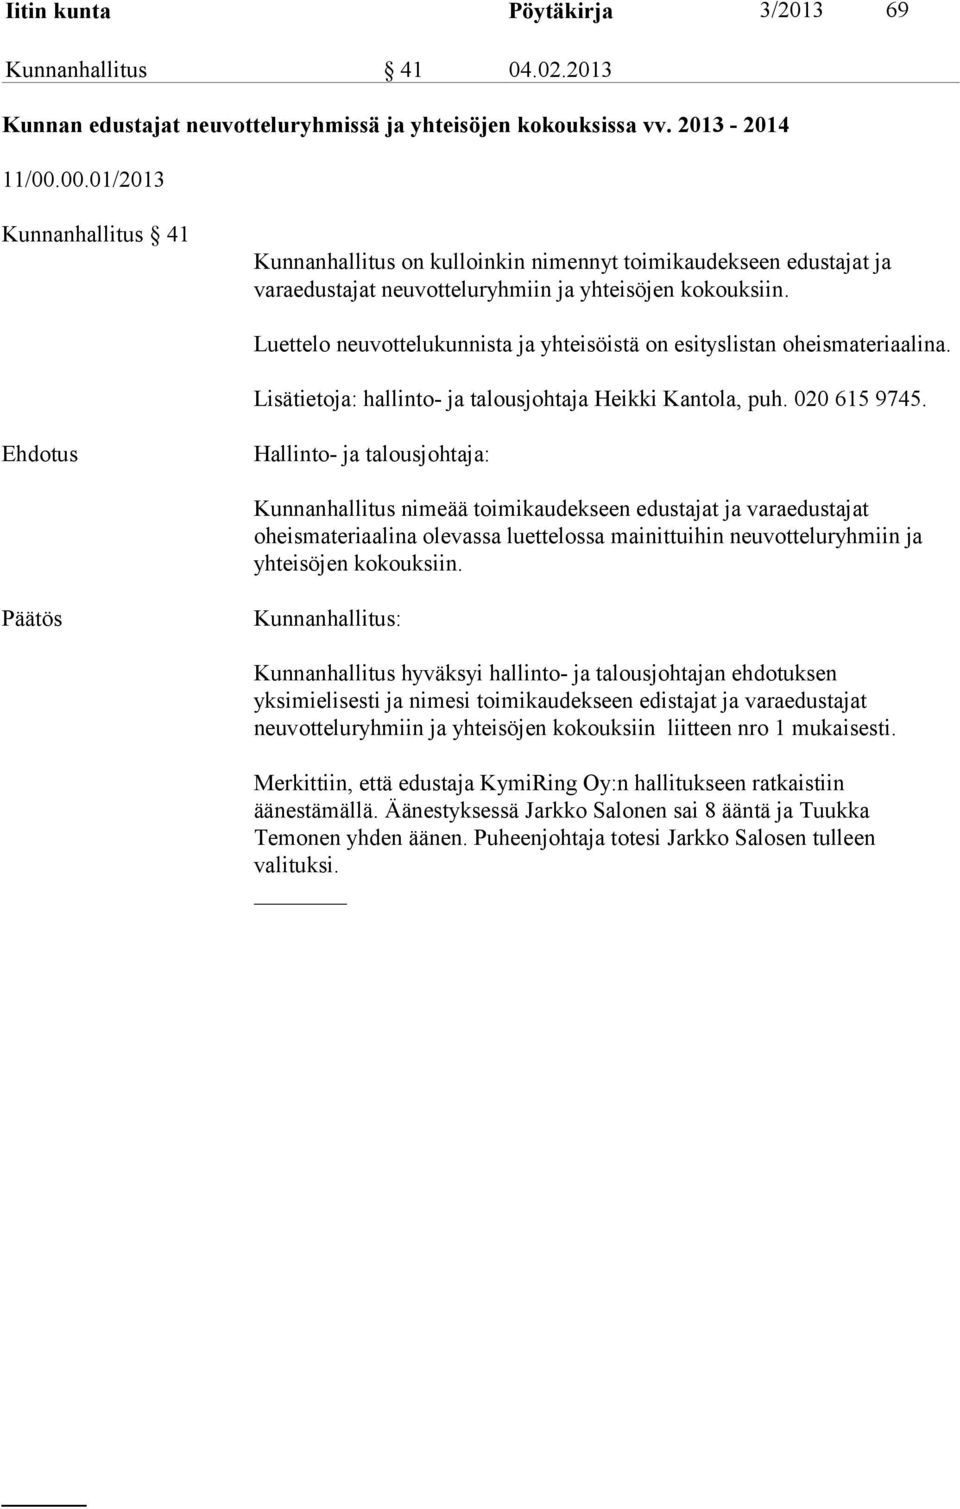 Luettelo neuvottelukunnista ja yhteisöistä on esityslistan oheismateriaalina. Lisätietoja: hallinto- ja talousjohtaja Heikki Kantola, puh. 020 615 9745.